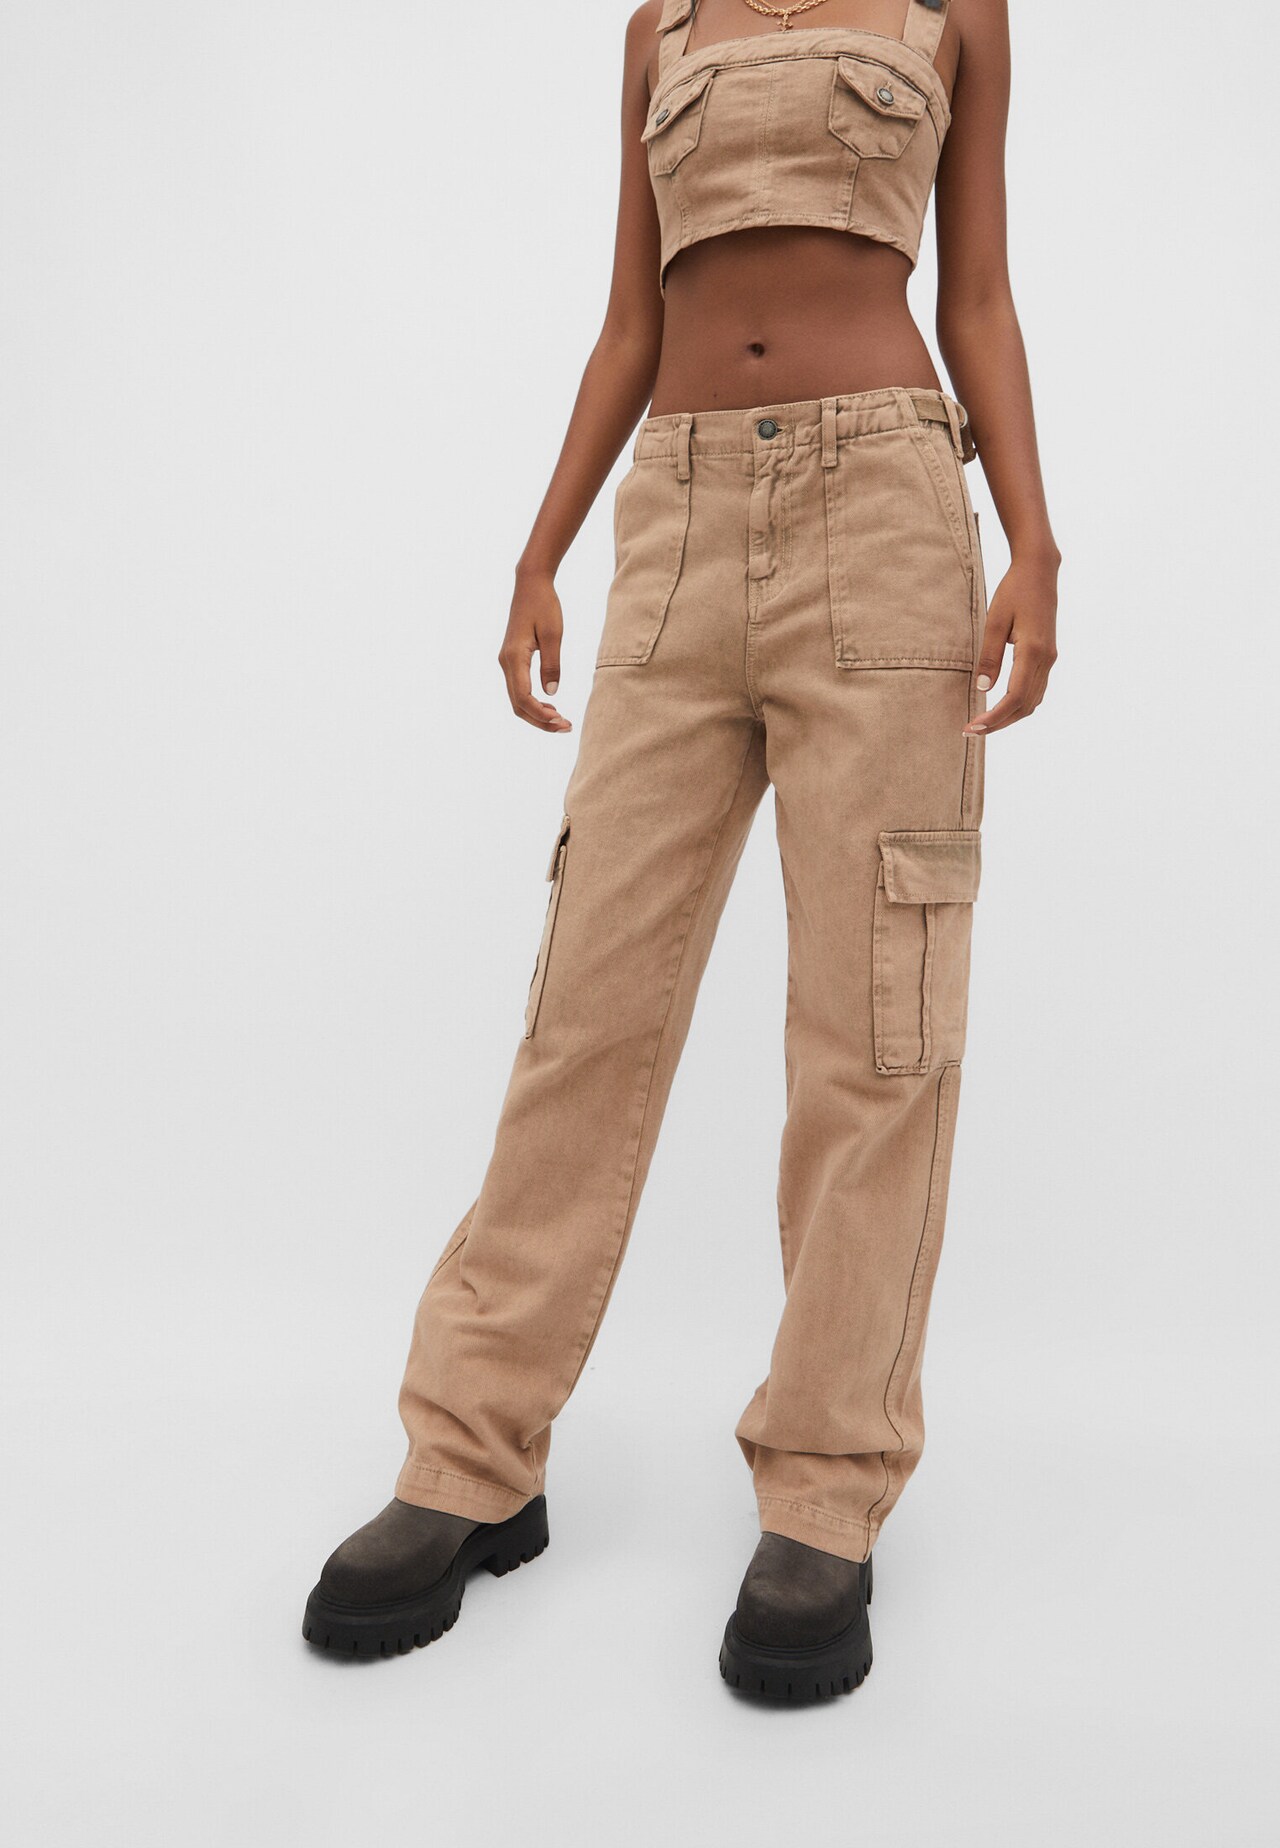 Plain Cropped Halter Top / Mid-Waist Plain Loose-Fit Cargo Pants